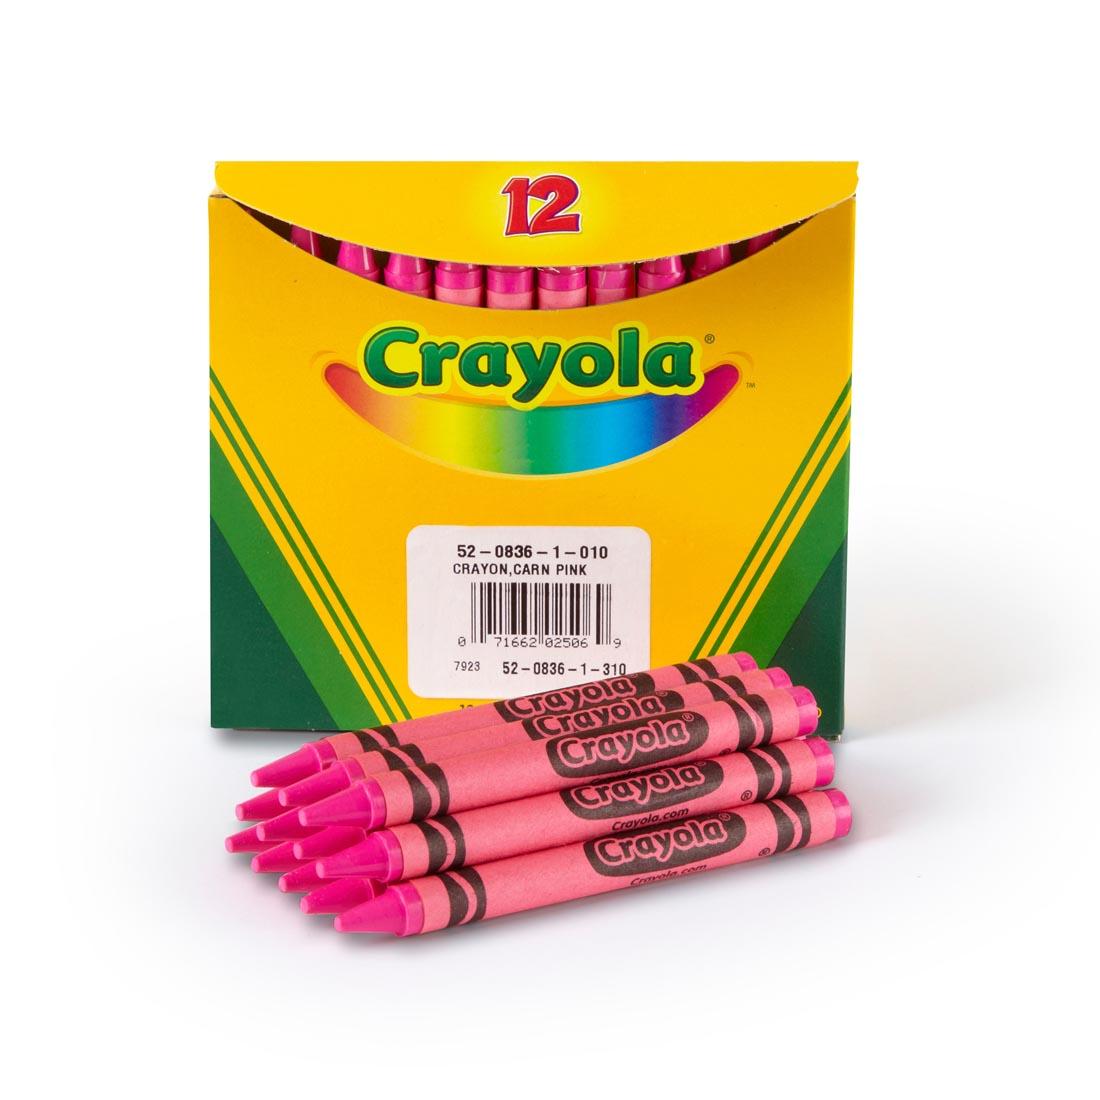 Box of Crayola Regular Crayon Refills with 12 Pink Crayons